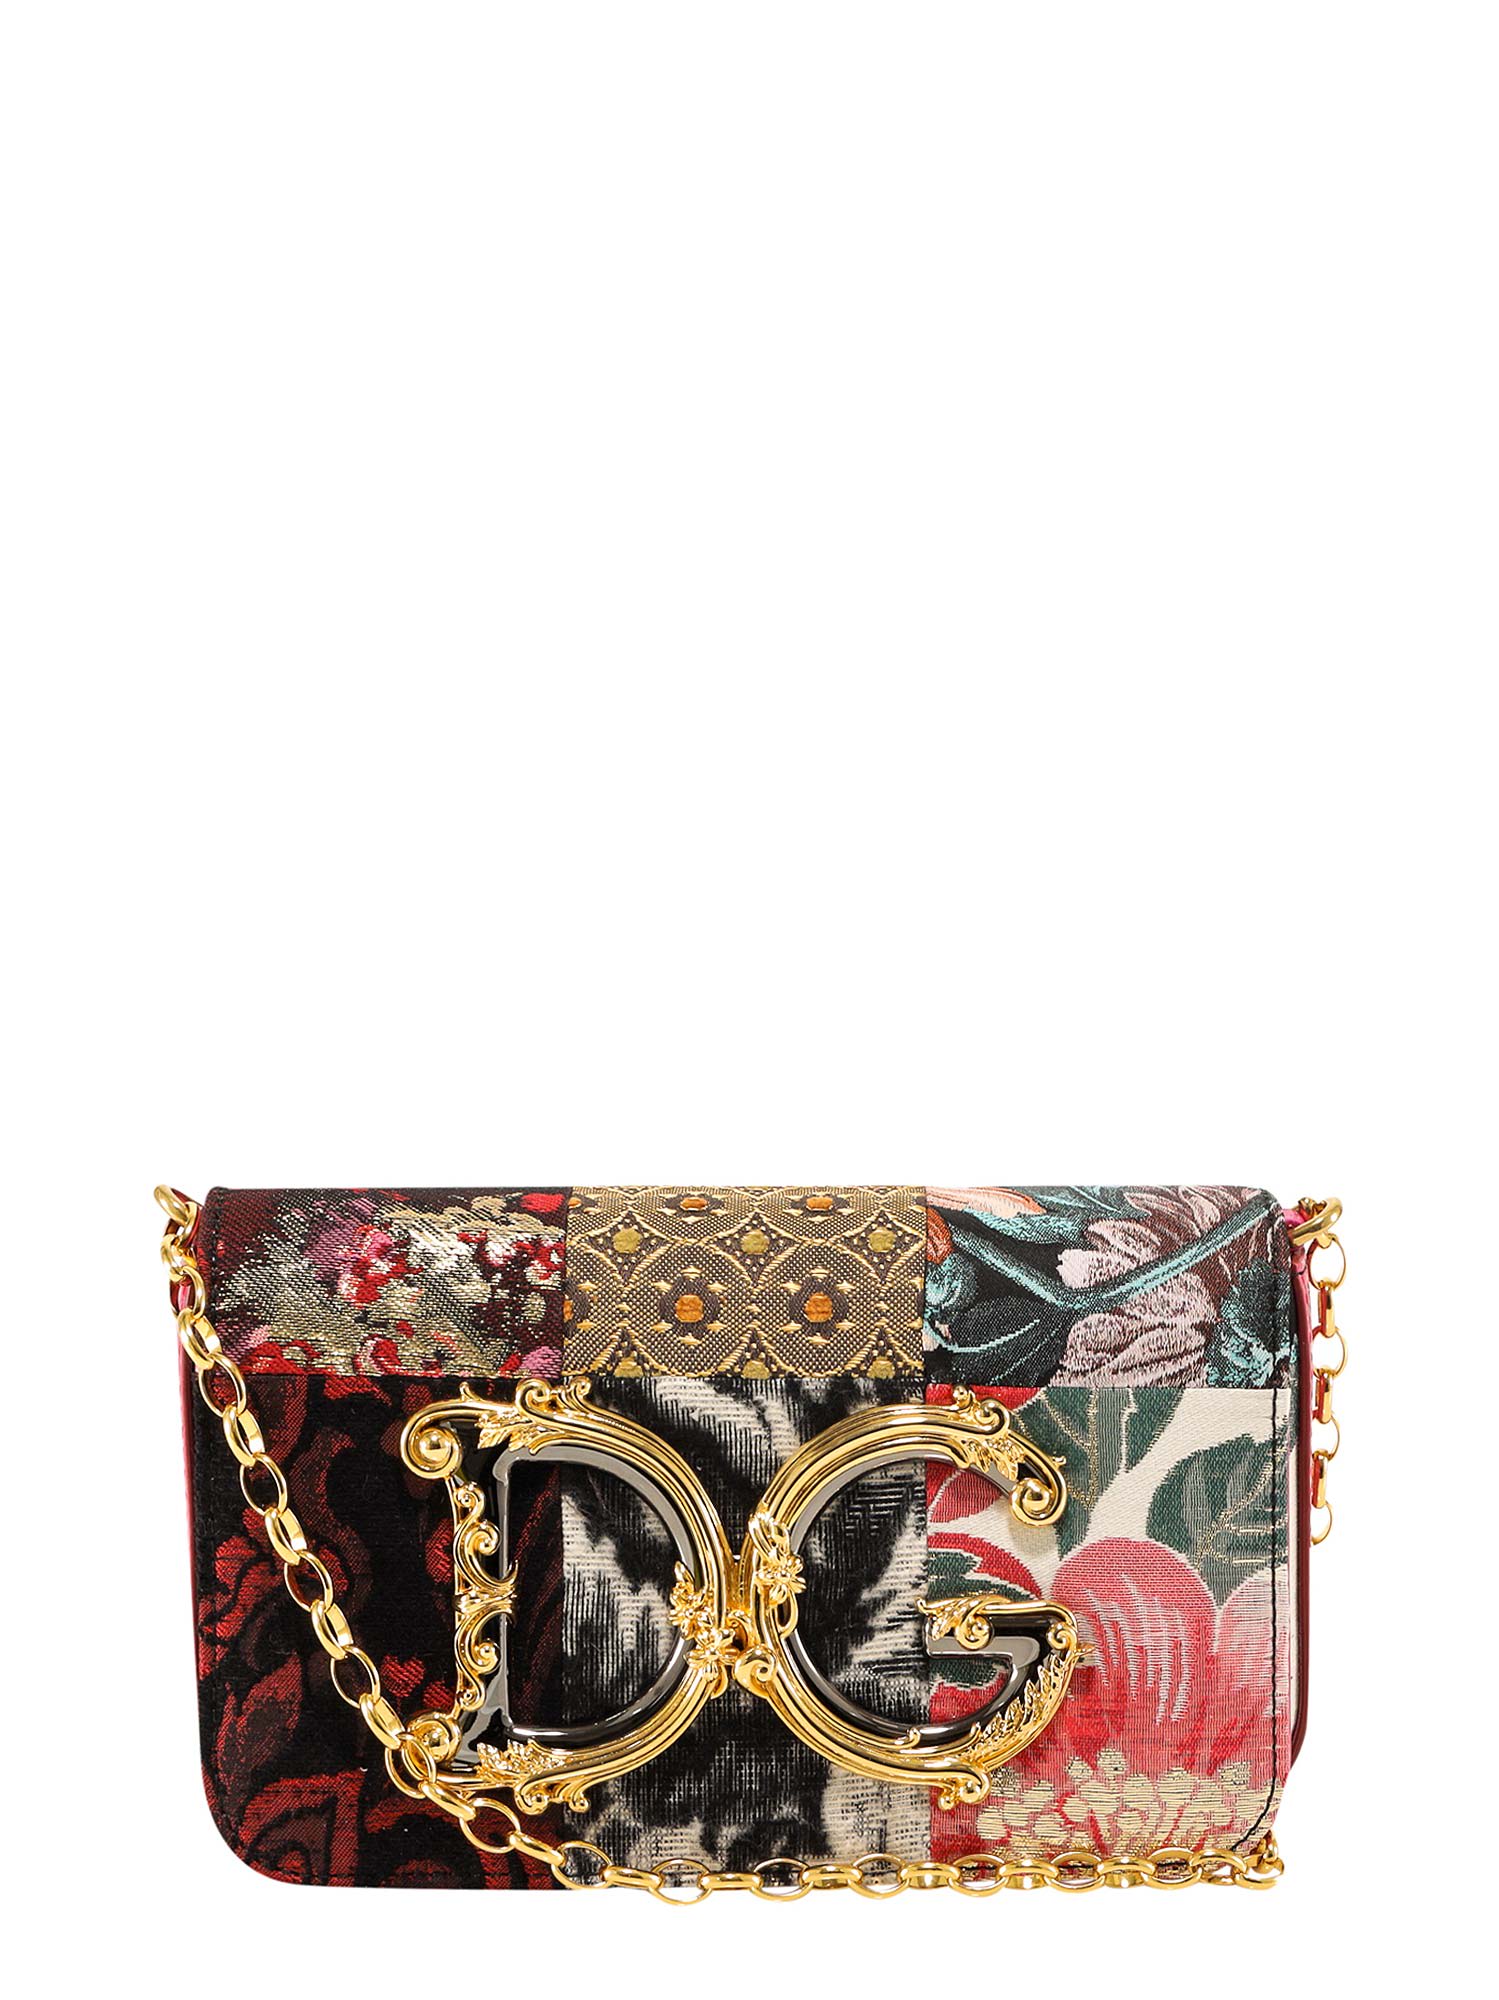 Dolce & Gabbana DG GIRLS SHOULDER BAG